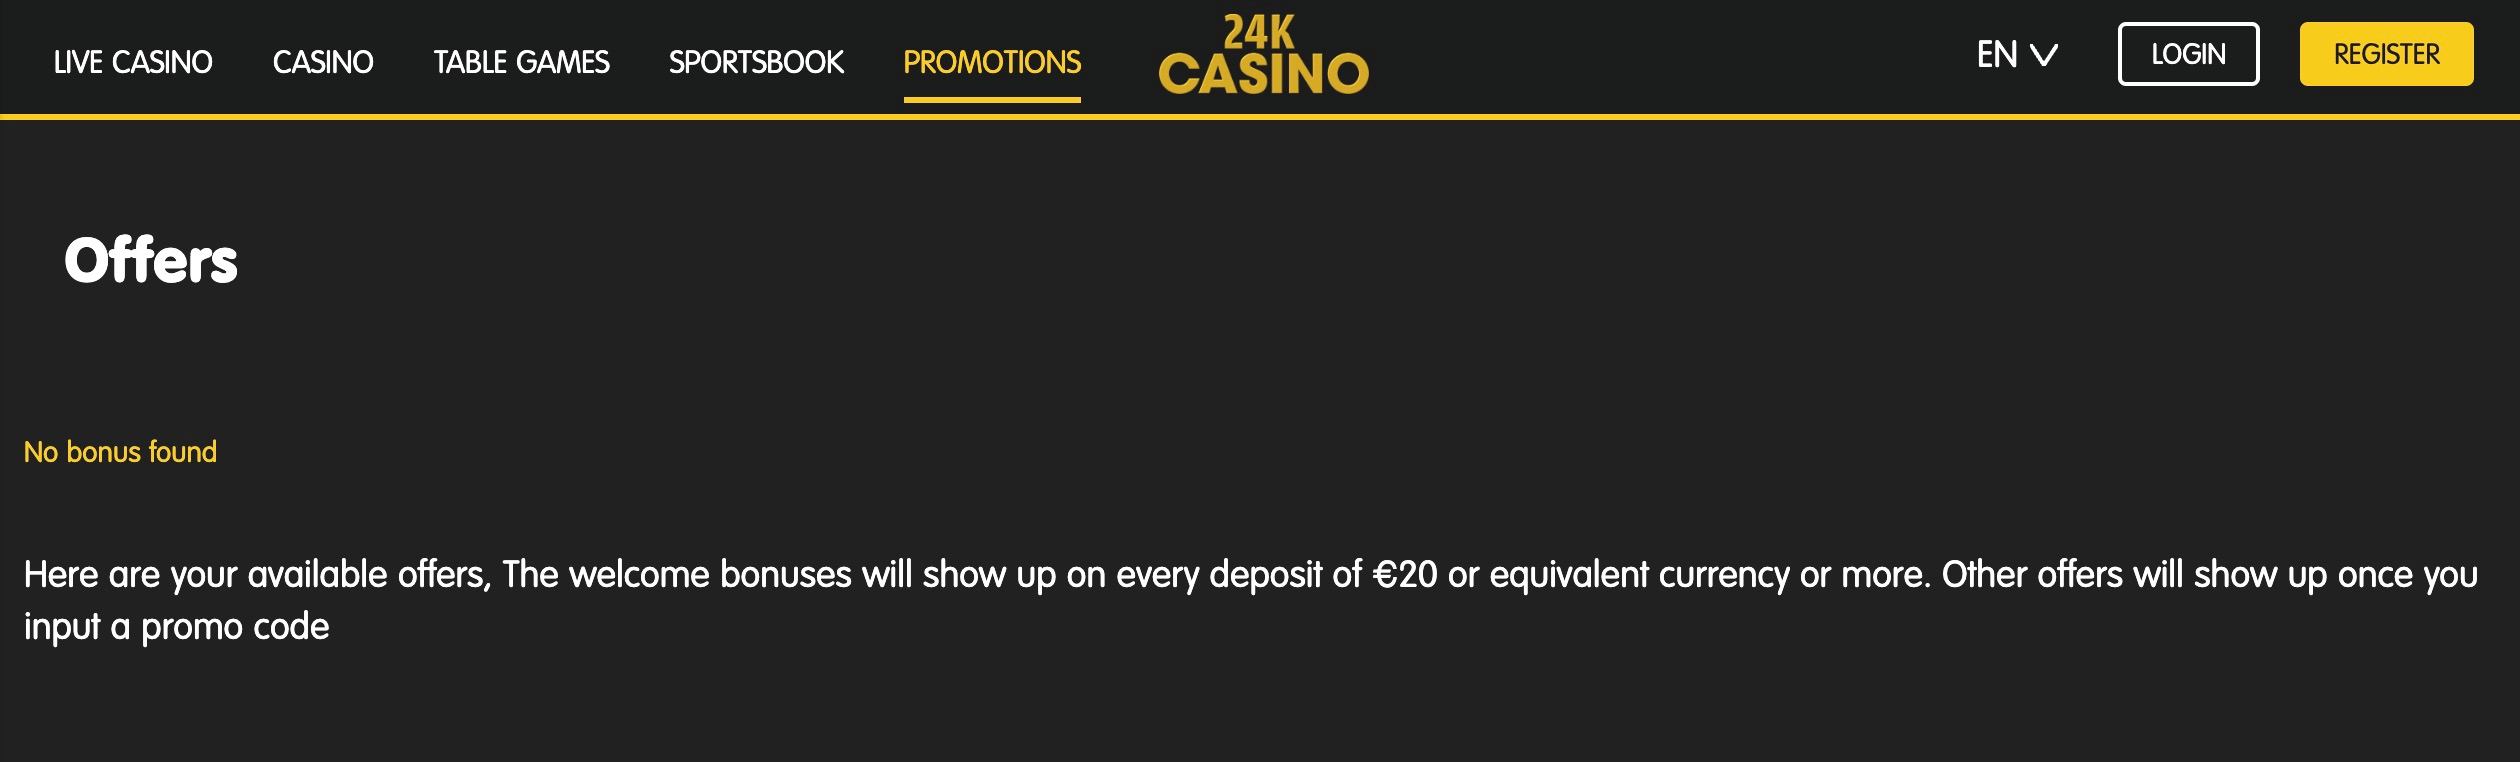 24k casino promos